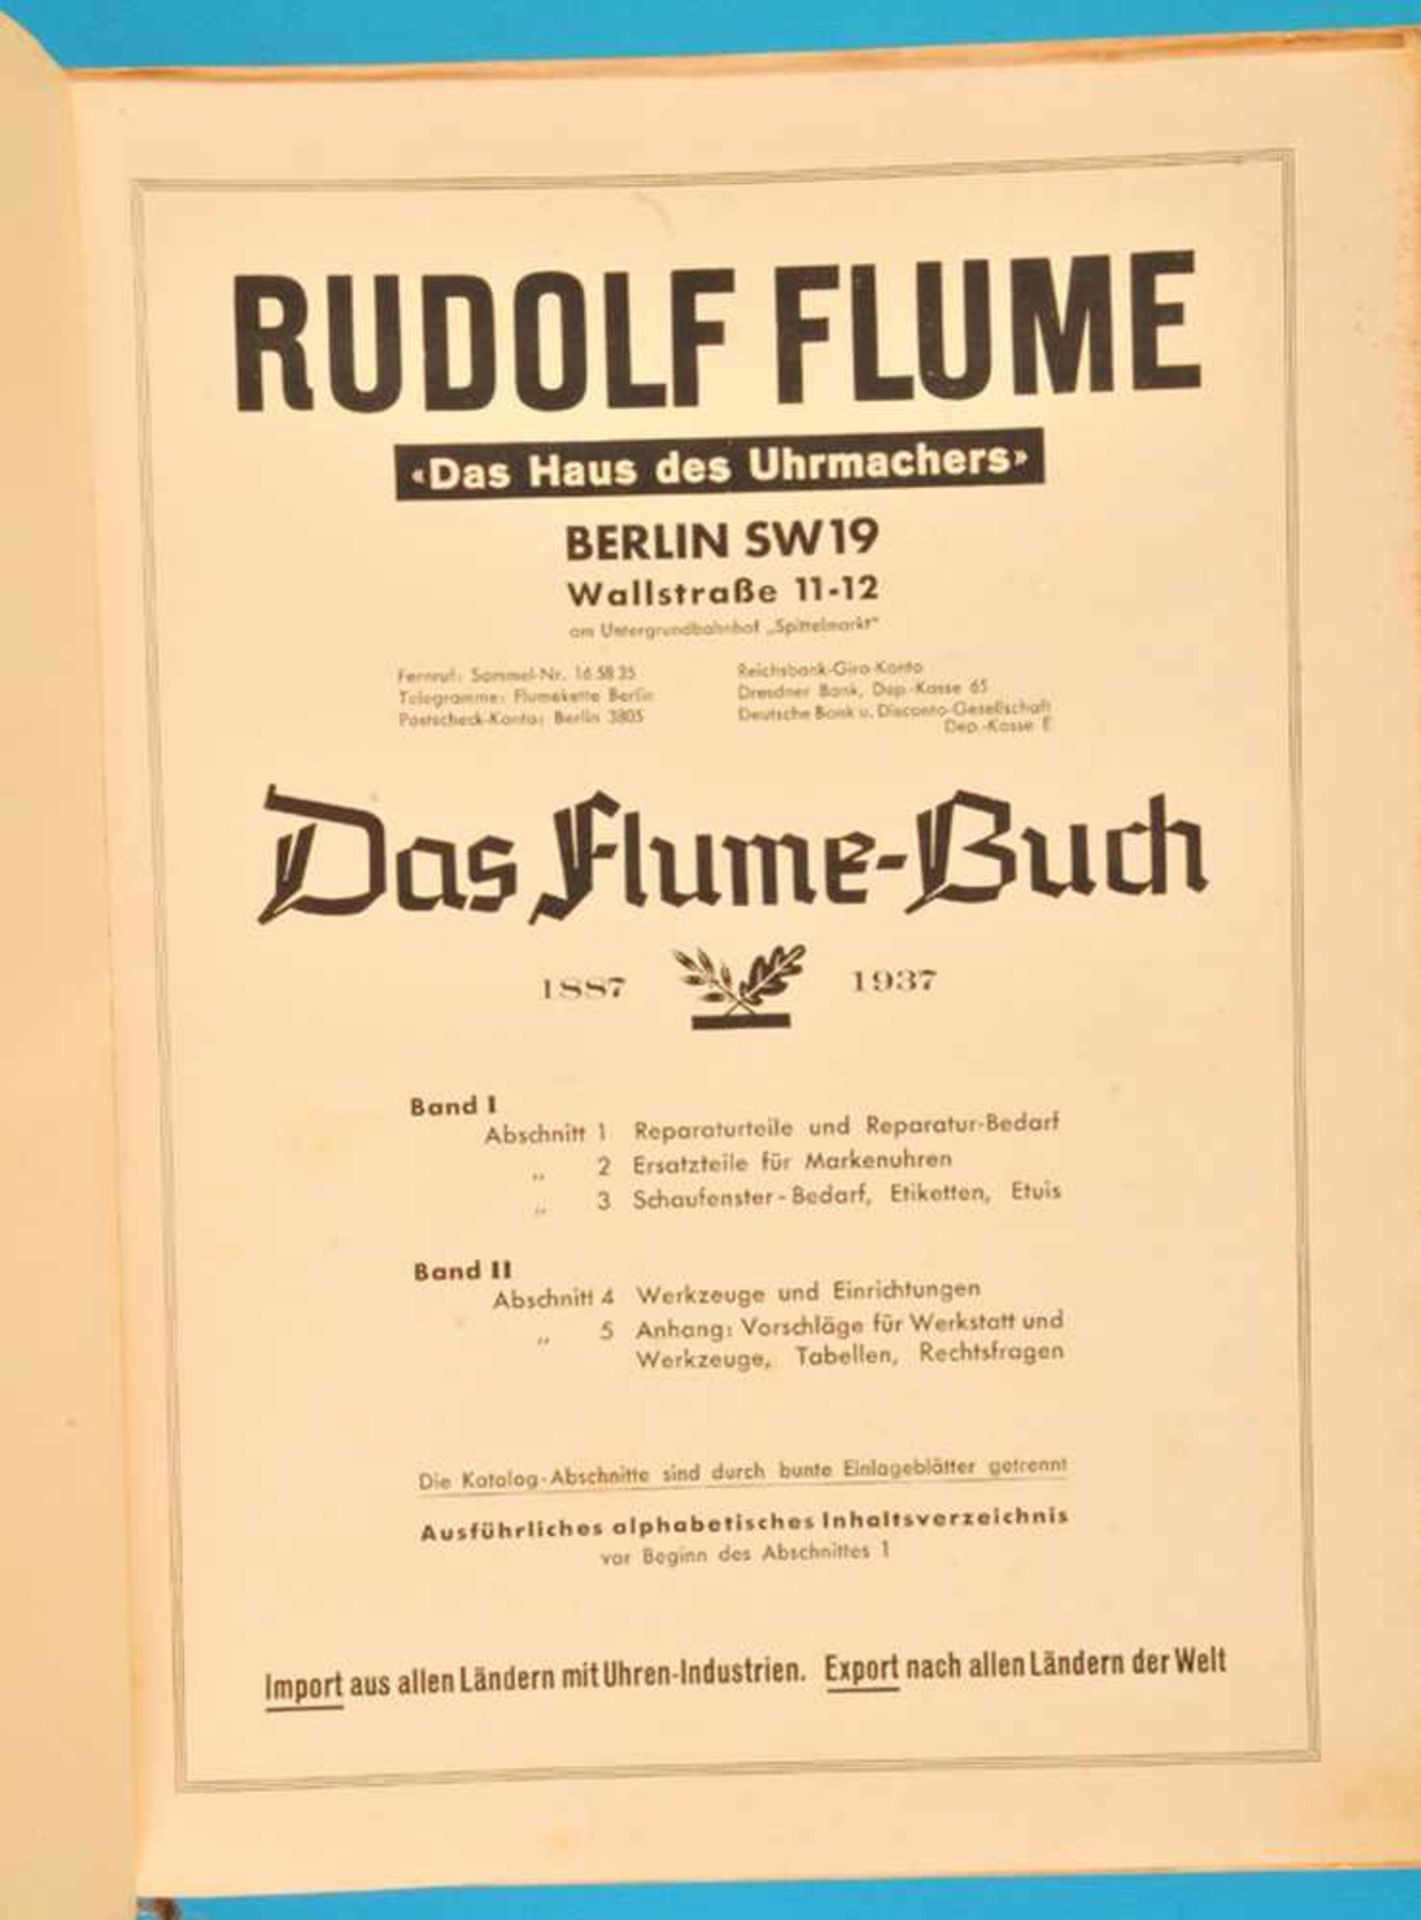 Rudolf Flume, Das Flume-Buch 1887-1937, Hauptkatalog von 1937 zum 50-jährigen Bestehen der Firma